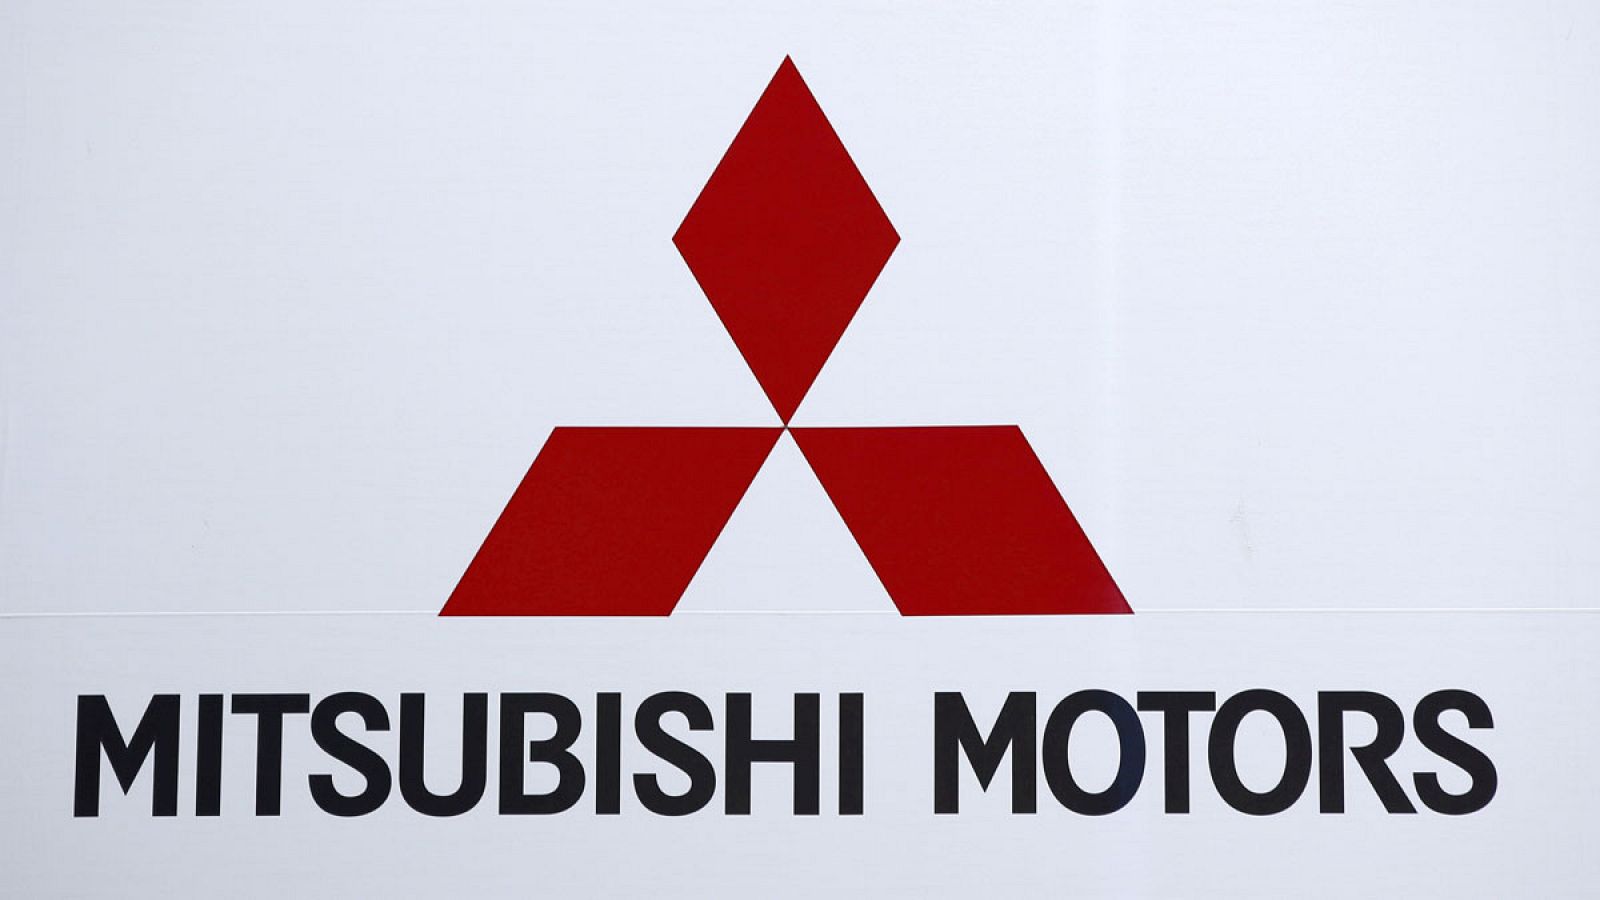 Logotipo de Mitsubishi Motors